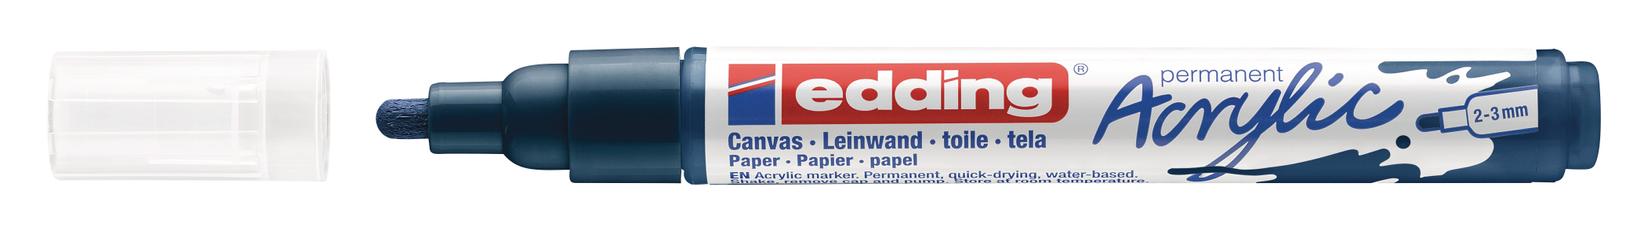 Selected image for EDDING Akrilni marker medium 2-3mm obli vrh E-5100 teget